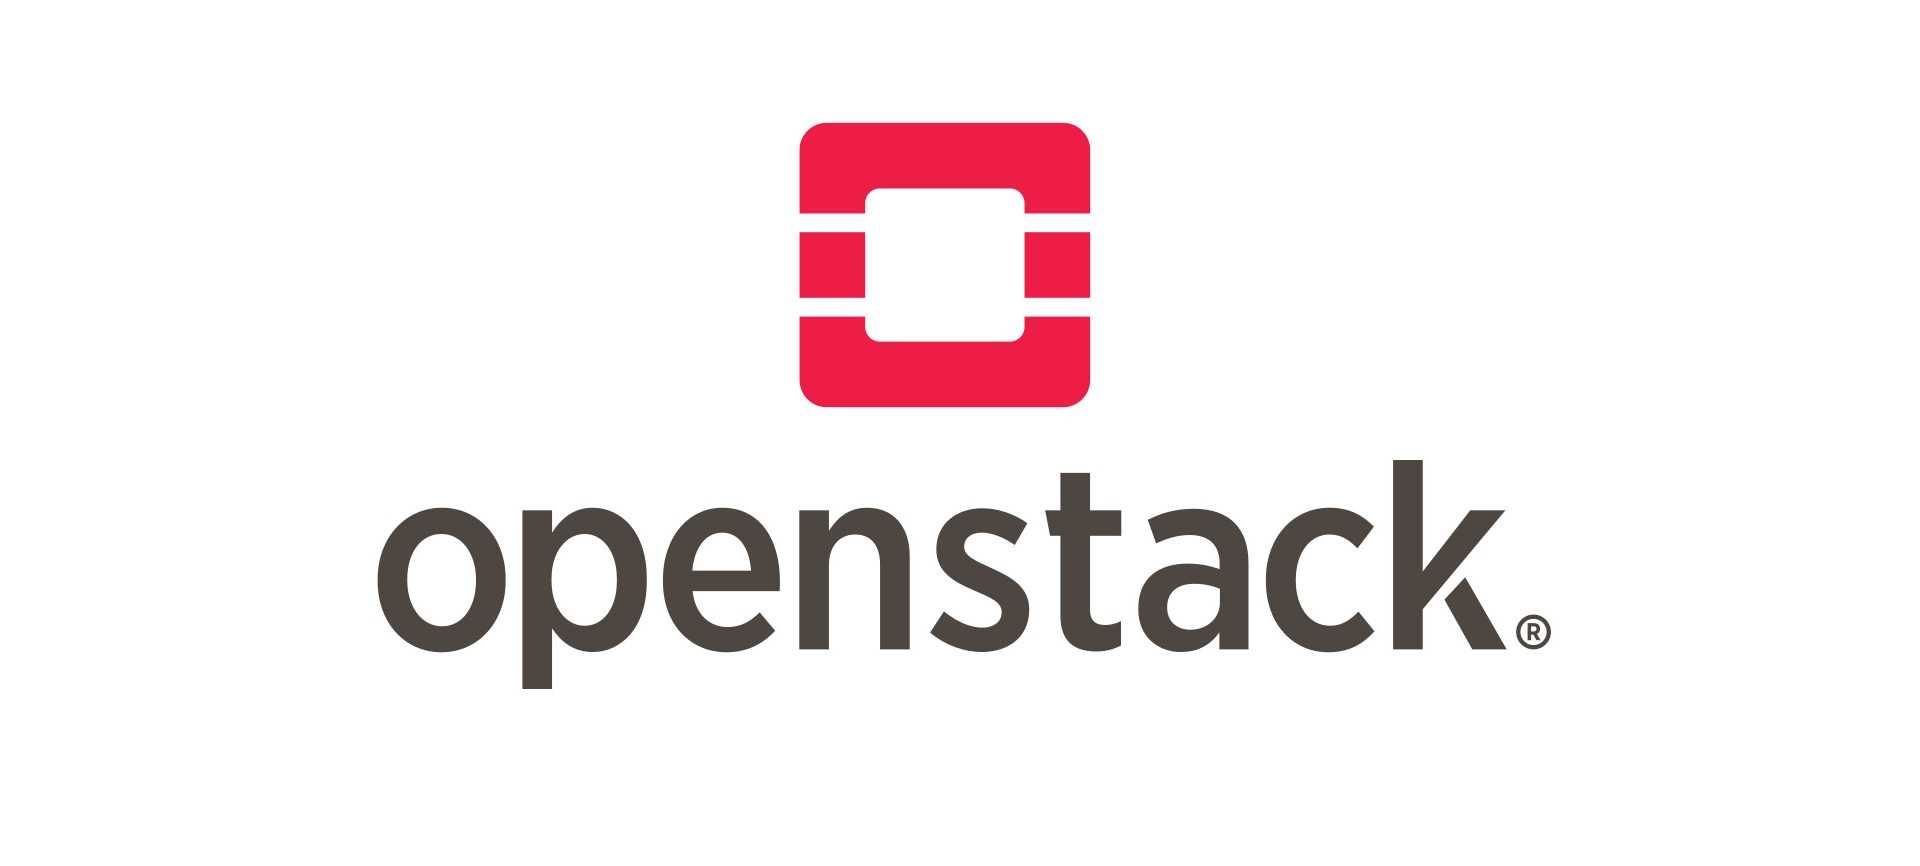 کمی درباره OpenStack